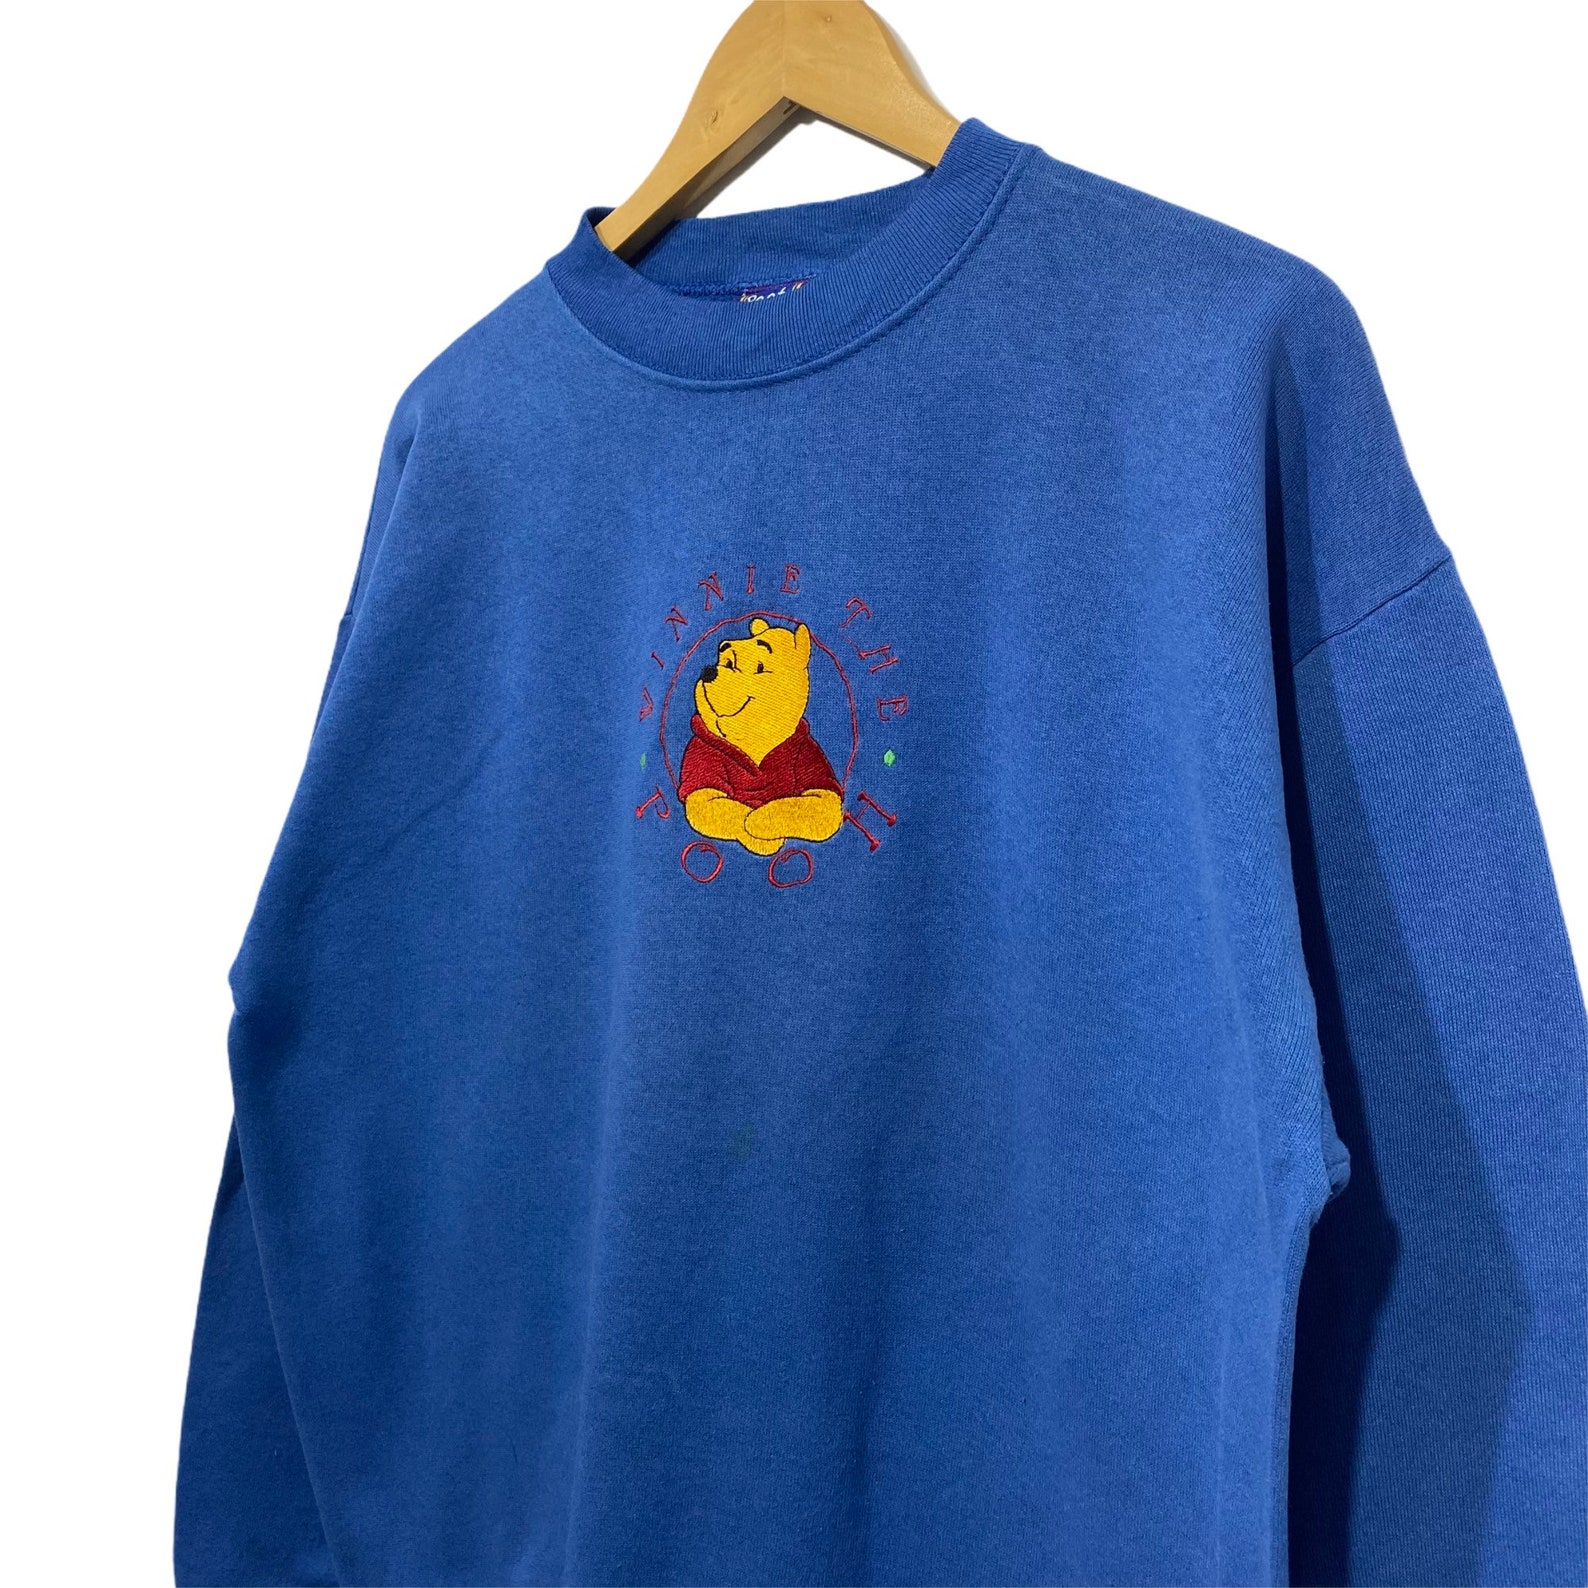 Vintage 90s Winnie The Pooh Crewneck sweatshirt jumper | Etsy